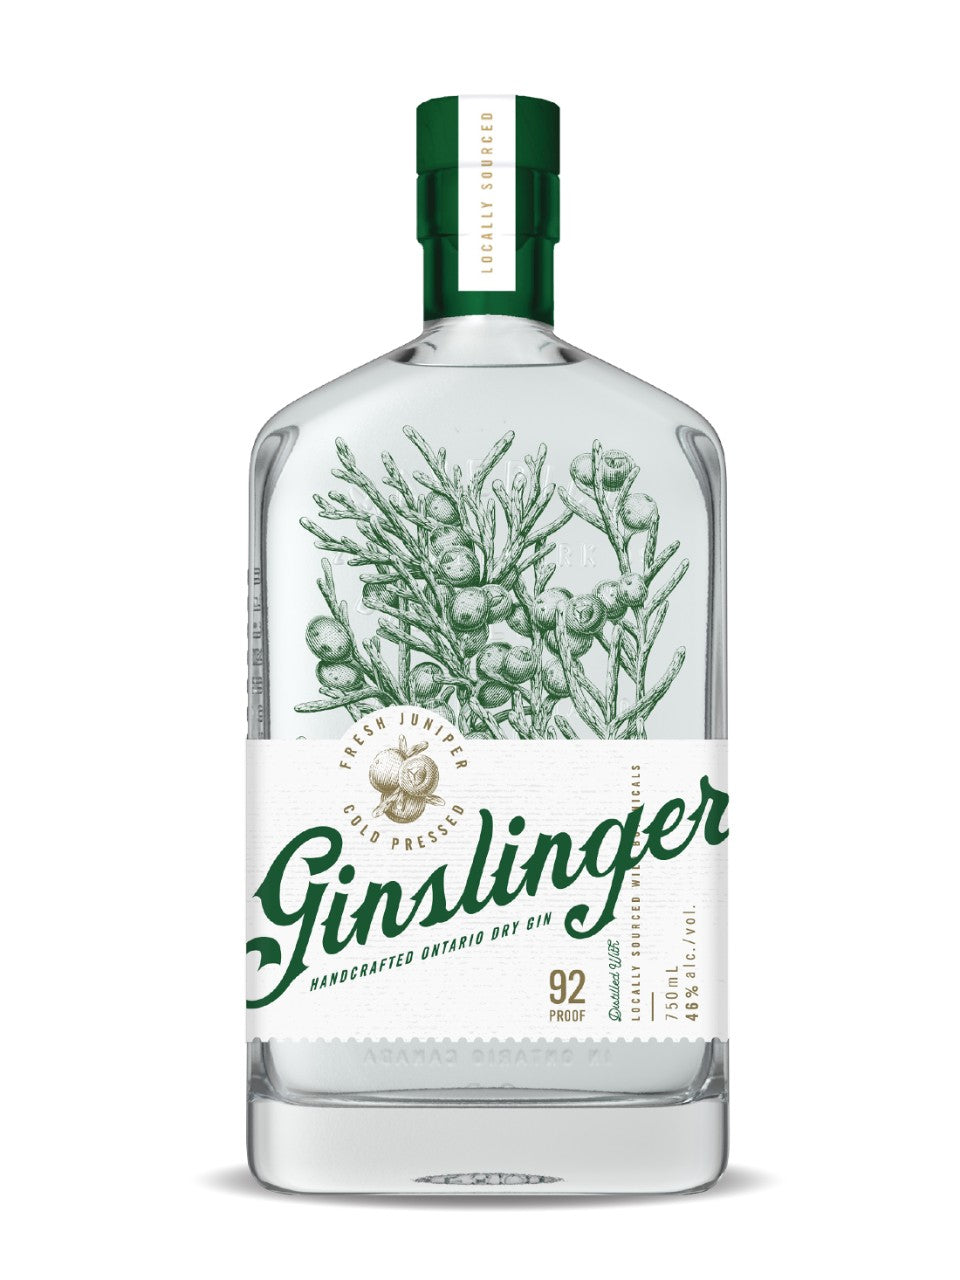 Ginslinger  Ontario Dry Gin 750 ml bottle